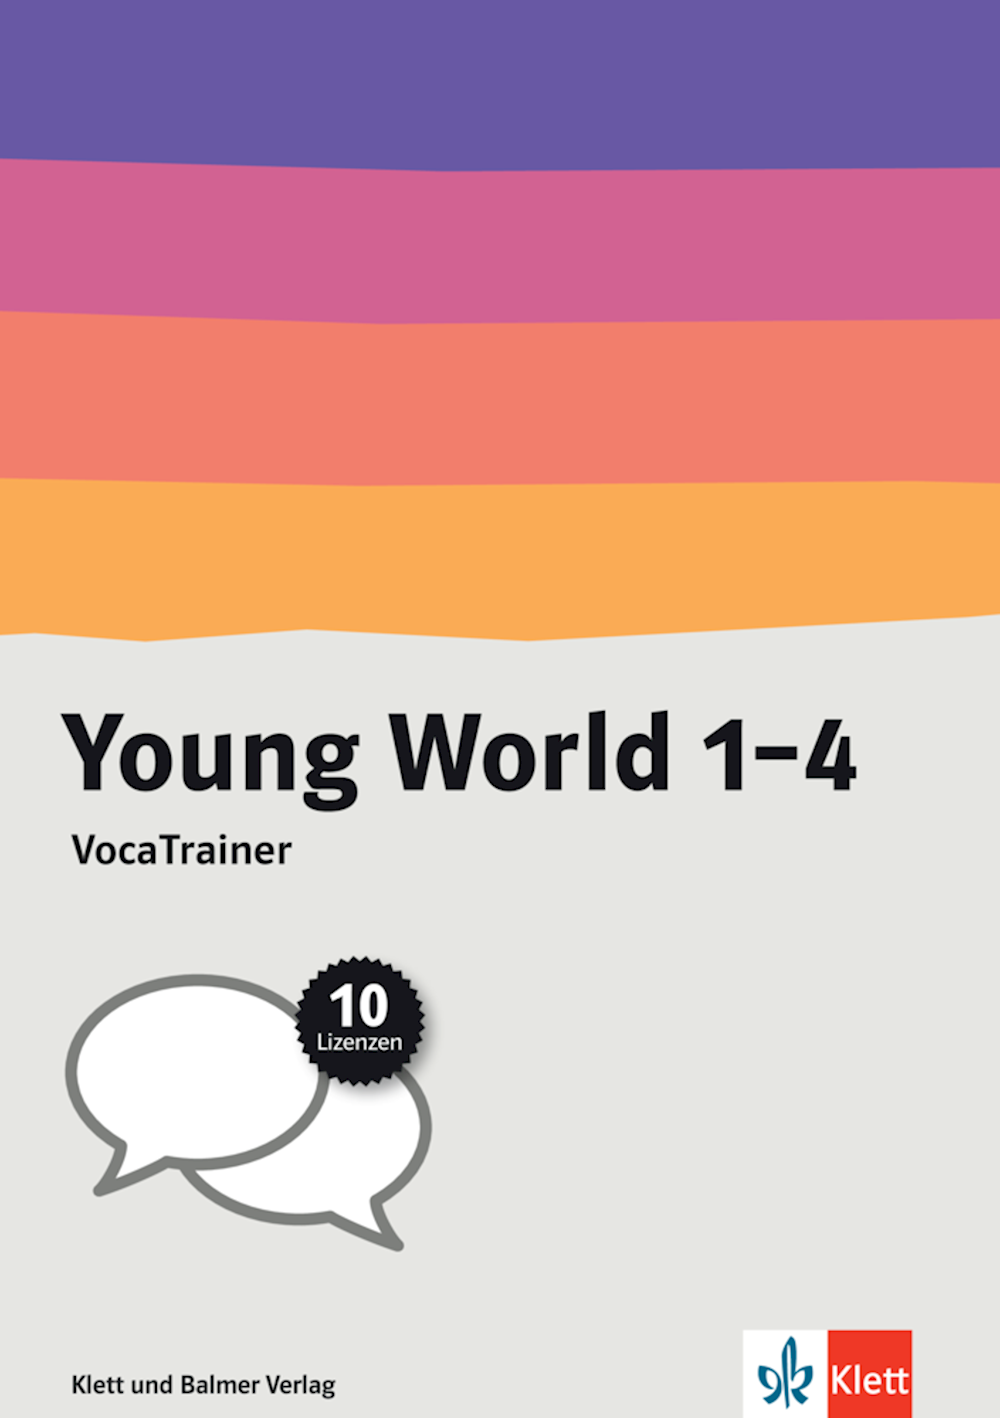 Young World 1–4 VocaTrainer, 10 Einjahreslizenzen